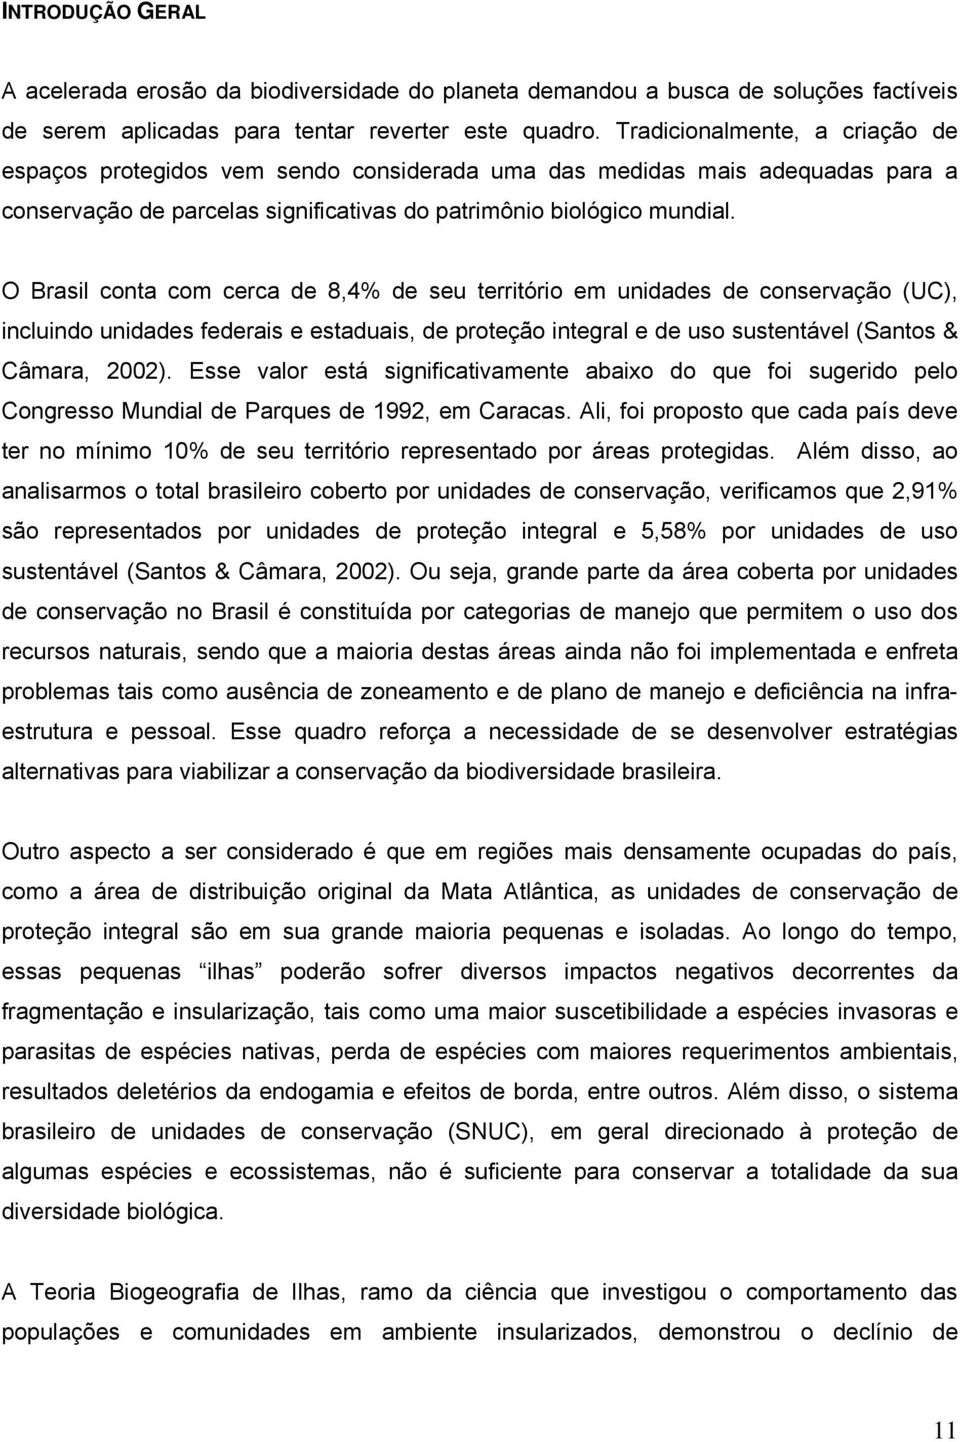 O Brasil conta com cerca de 8,4% de seu território em unidades de conservação (UC), incluindo unidades federais e estaduais, de proteção integral e de uso sustentável (Santos & Câmara, 2002).